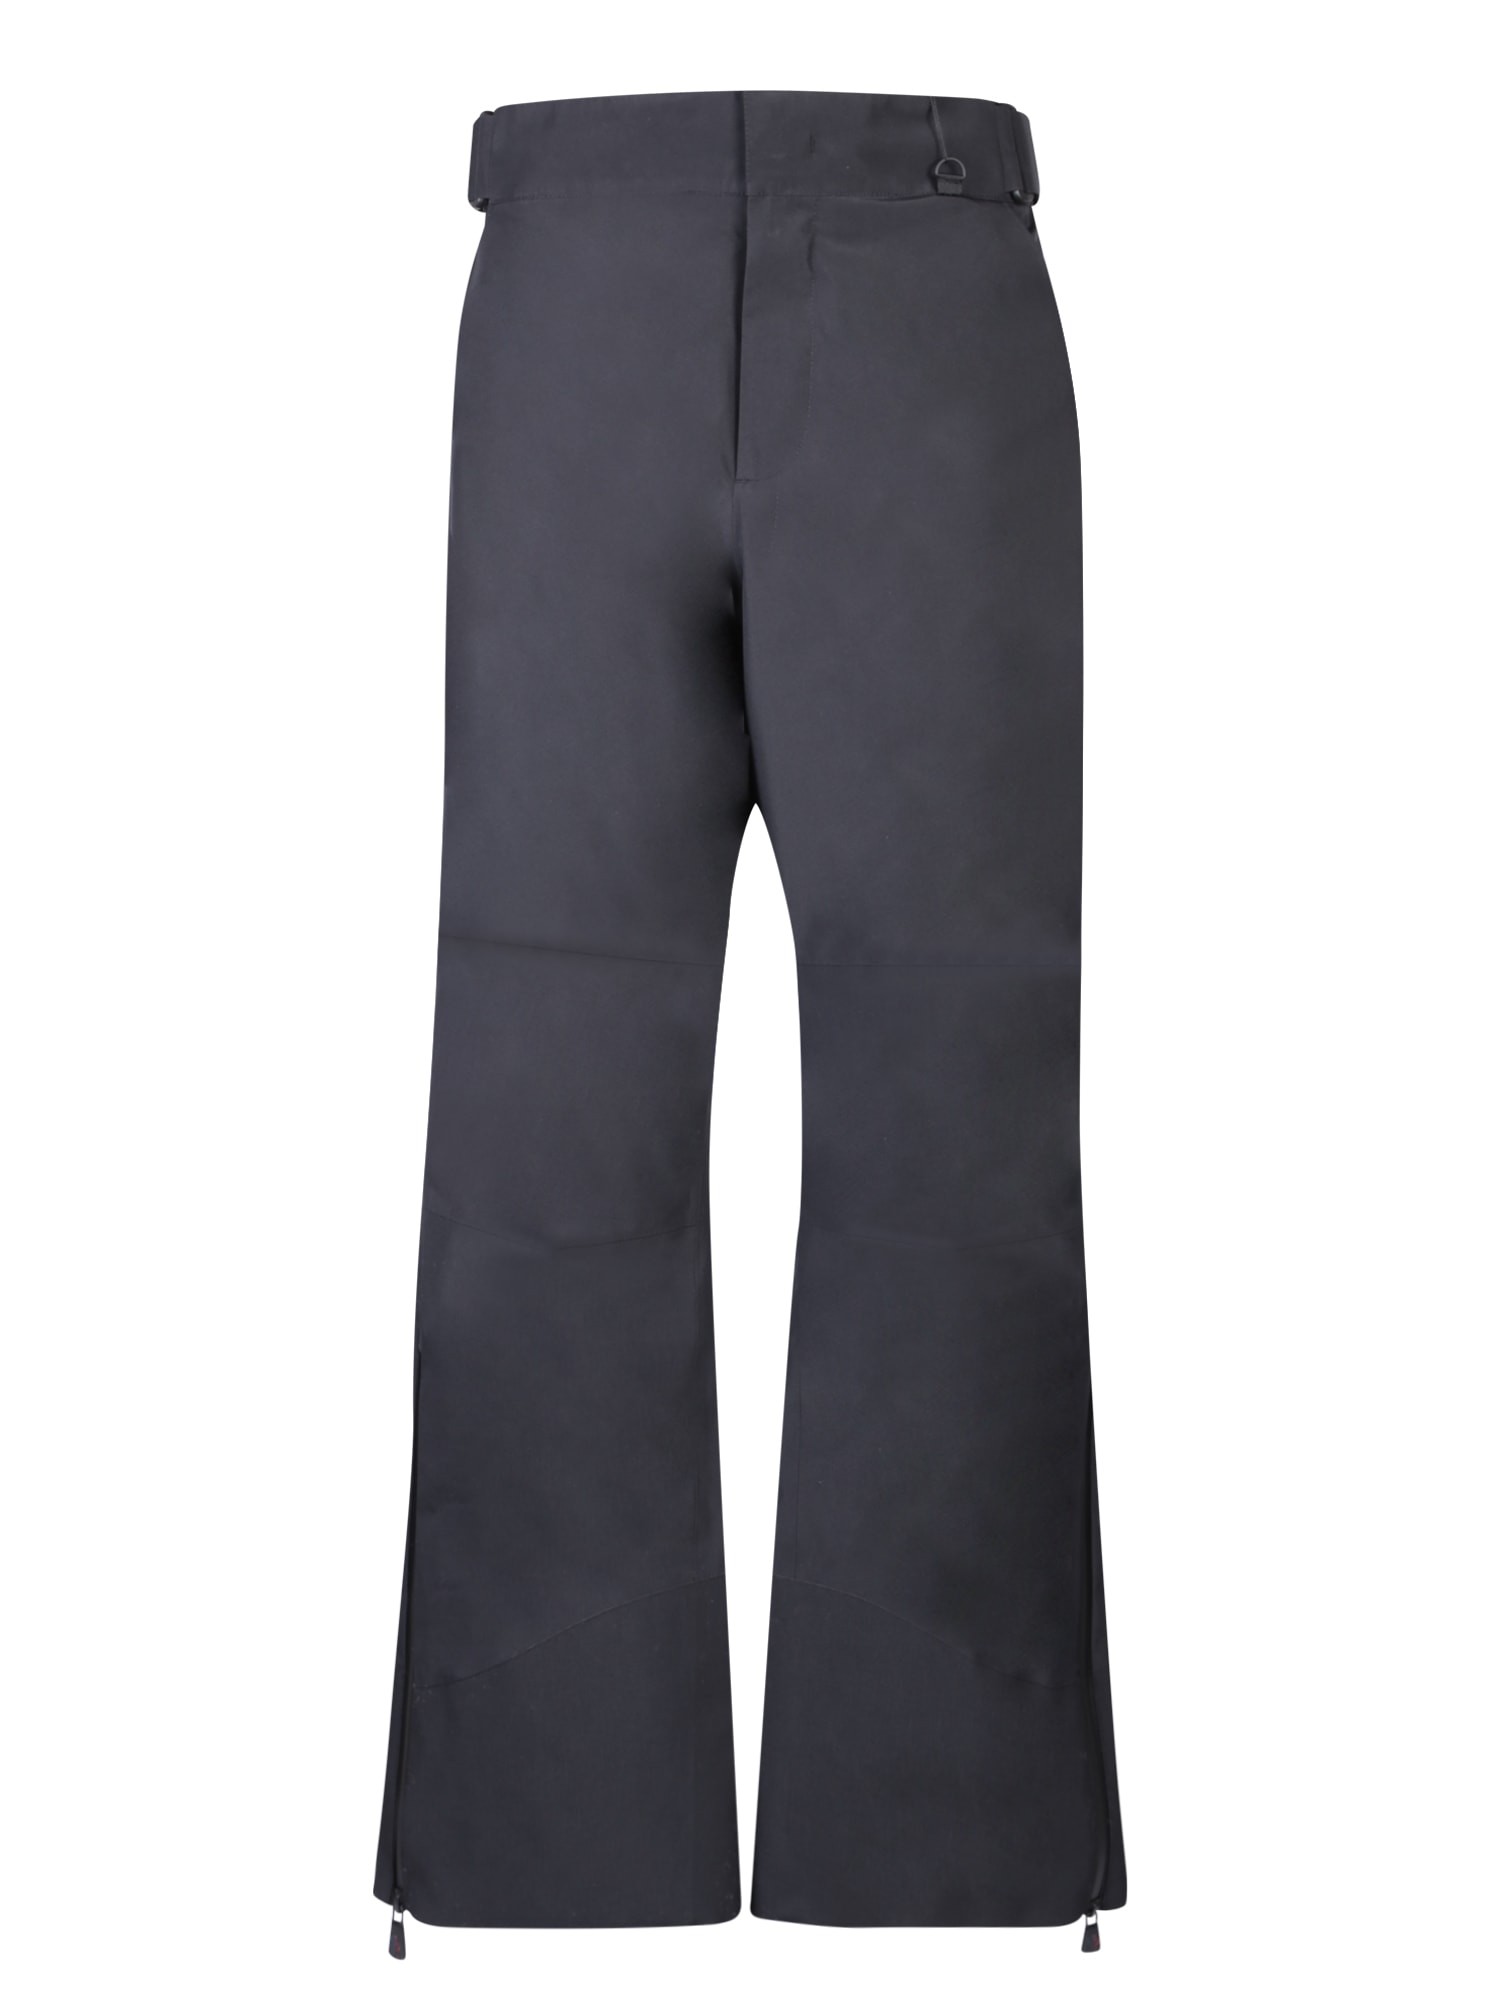 Shop Moncler Black Ski Trousers